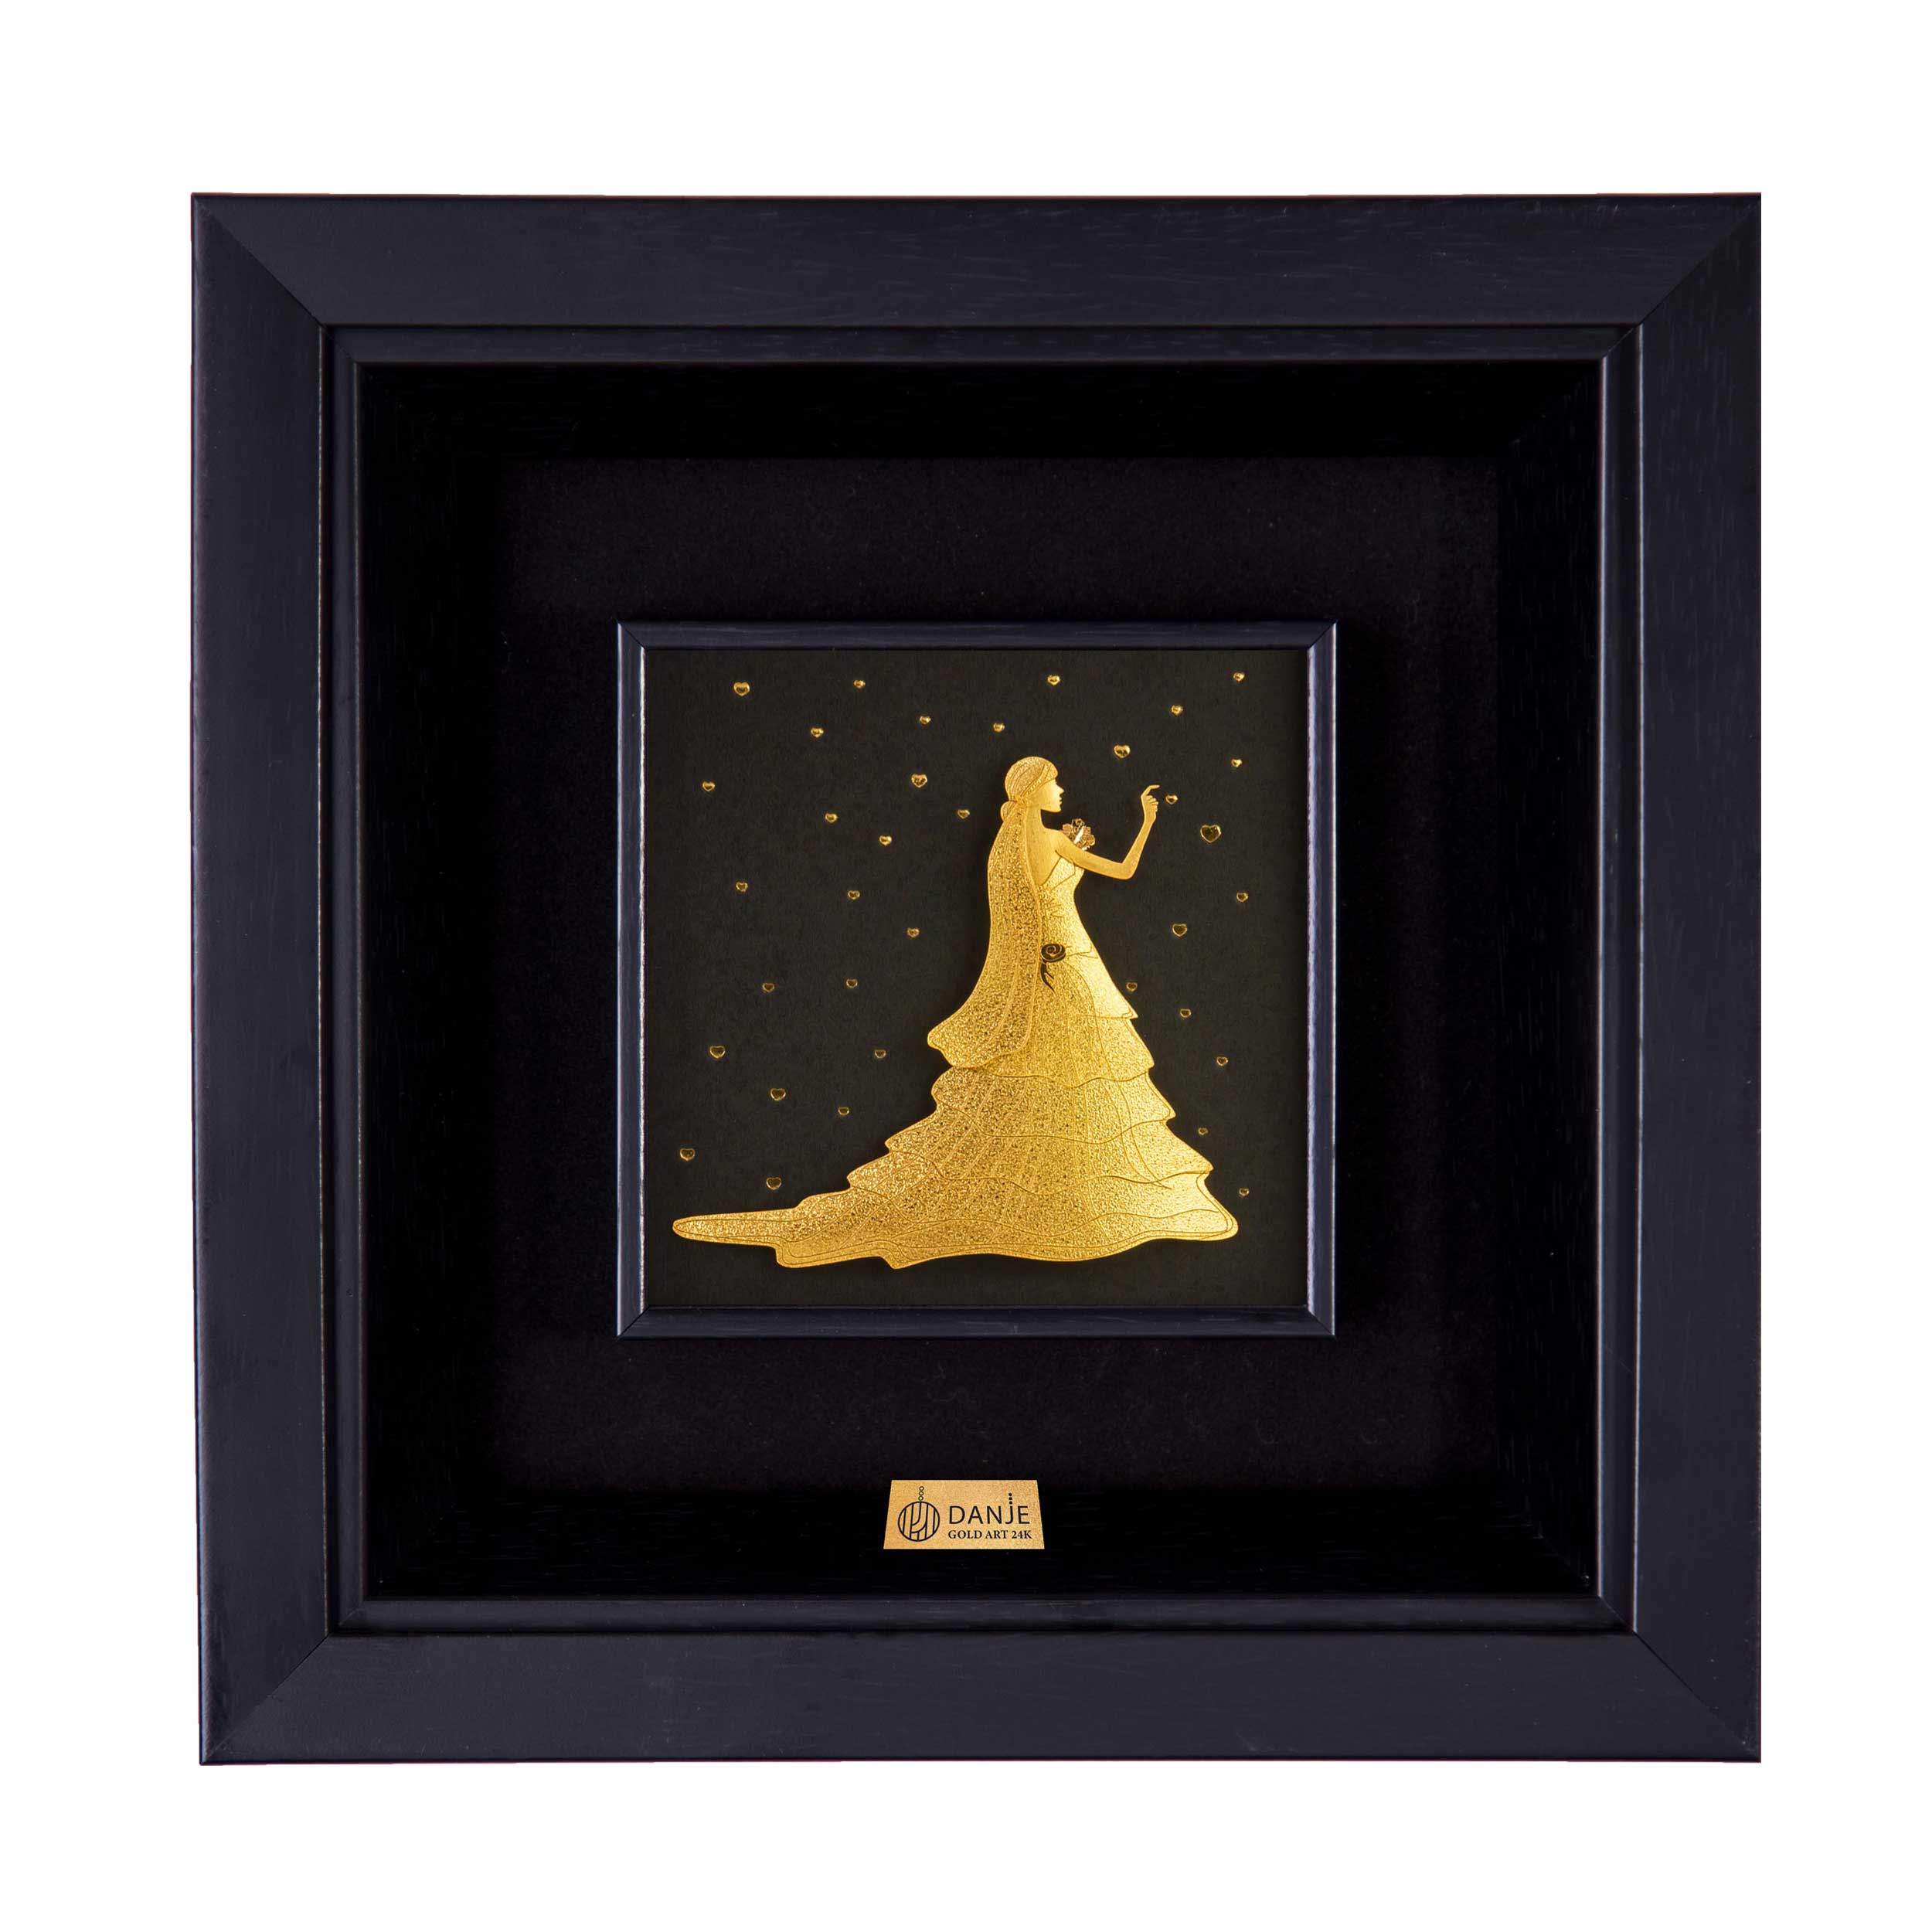 24 carat gold leaf board with PVC frame, star design